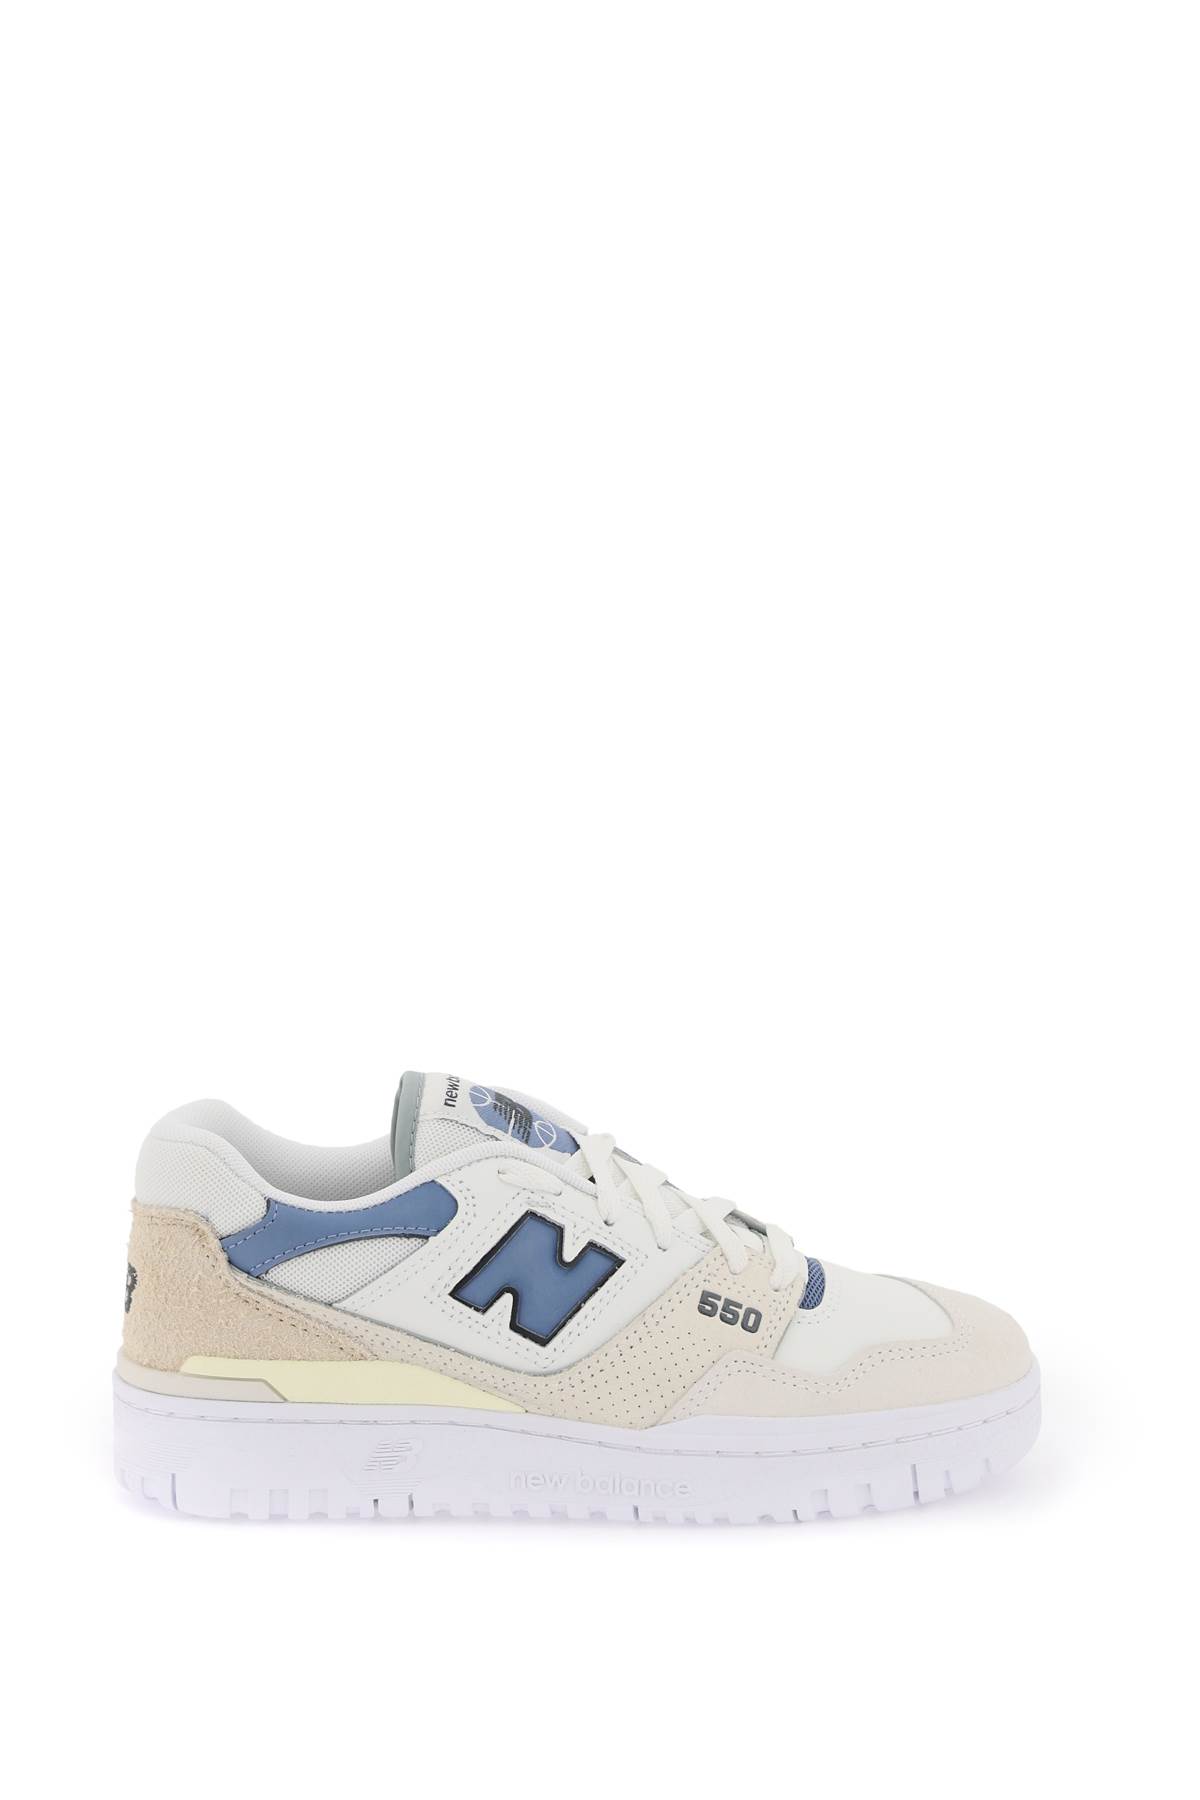 Shop New Balance 550 Sneakers In Sea Salt Blue (beige)